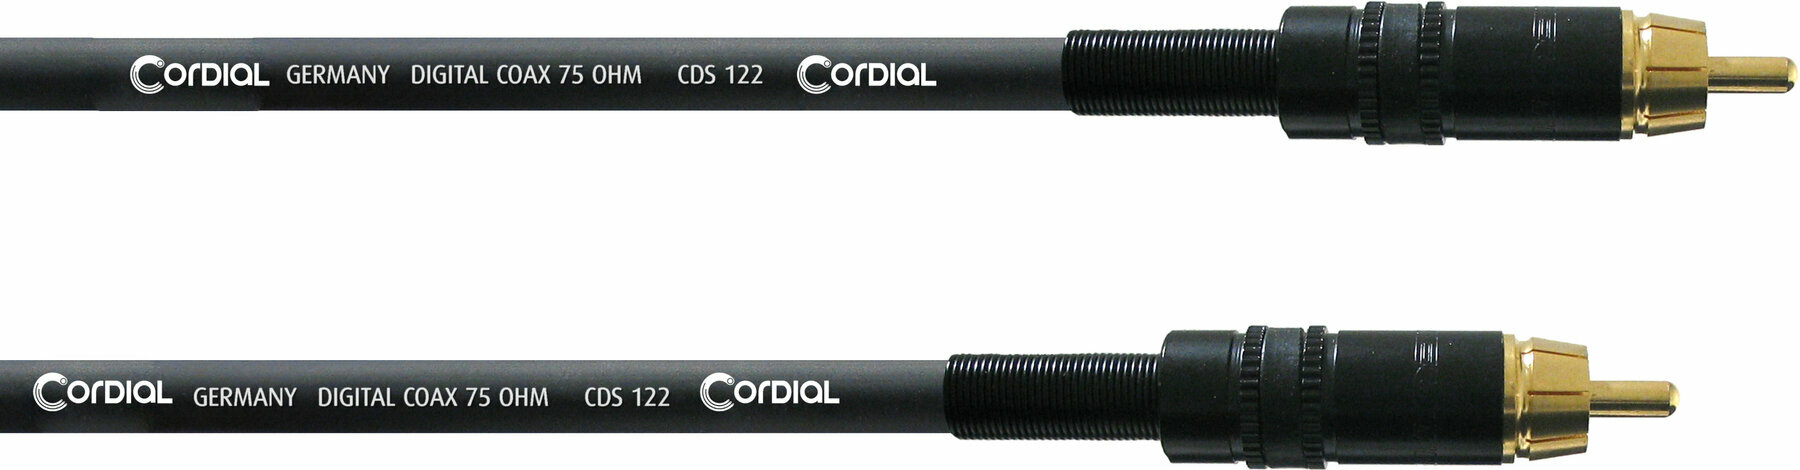 Äänikaapeli Cordial CPDS 10 CC 10 m Äänikaapeli